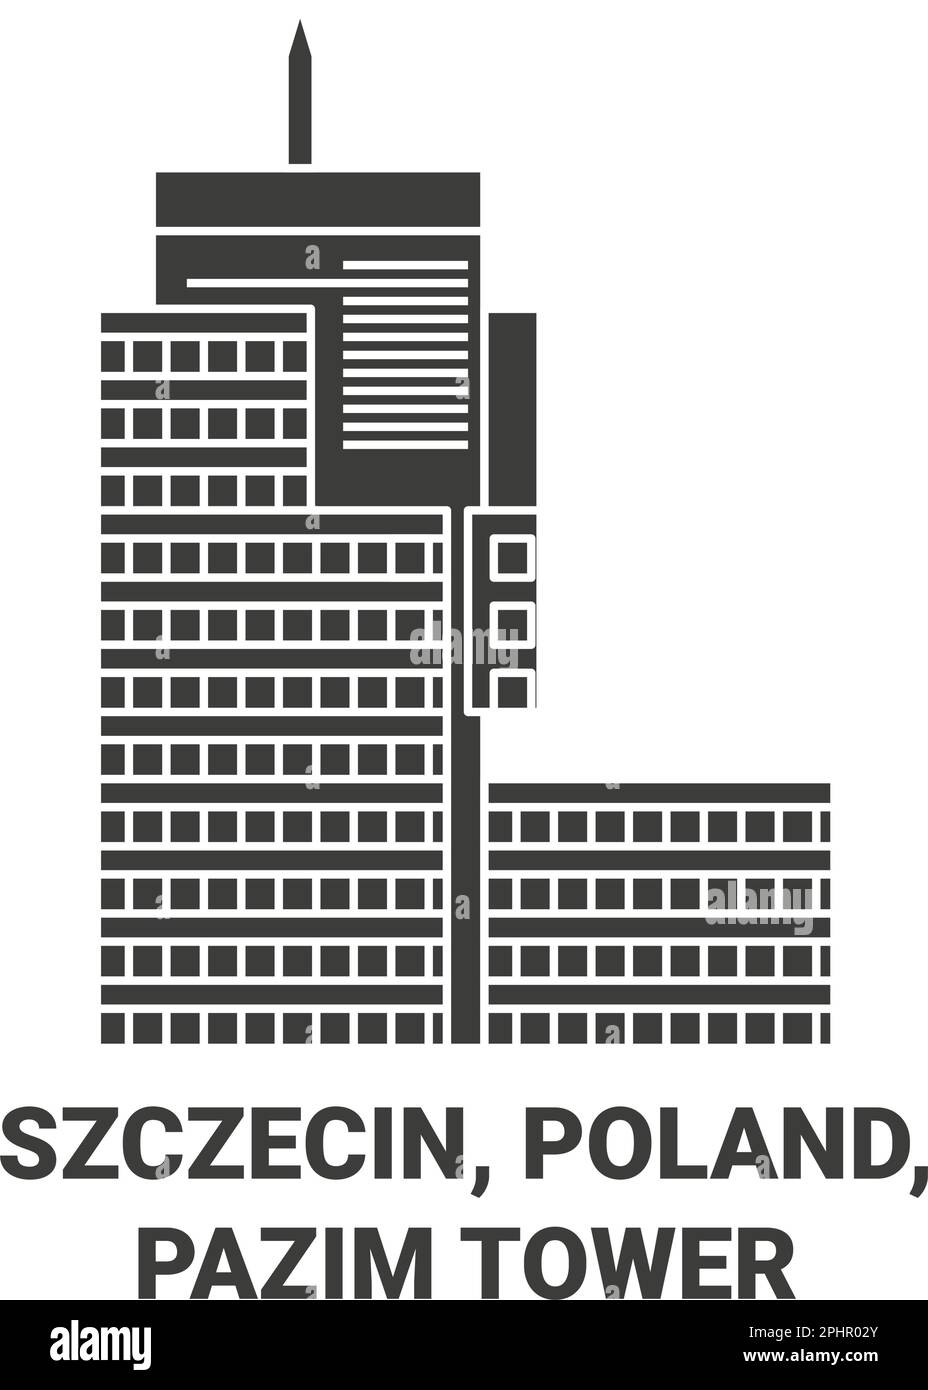 Polonia, Szczecin, Pazim Tower viaggio punto di riferimento vettoriale illustrazione Illustrazione Vettoriale